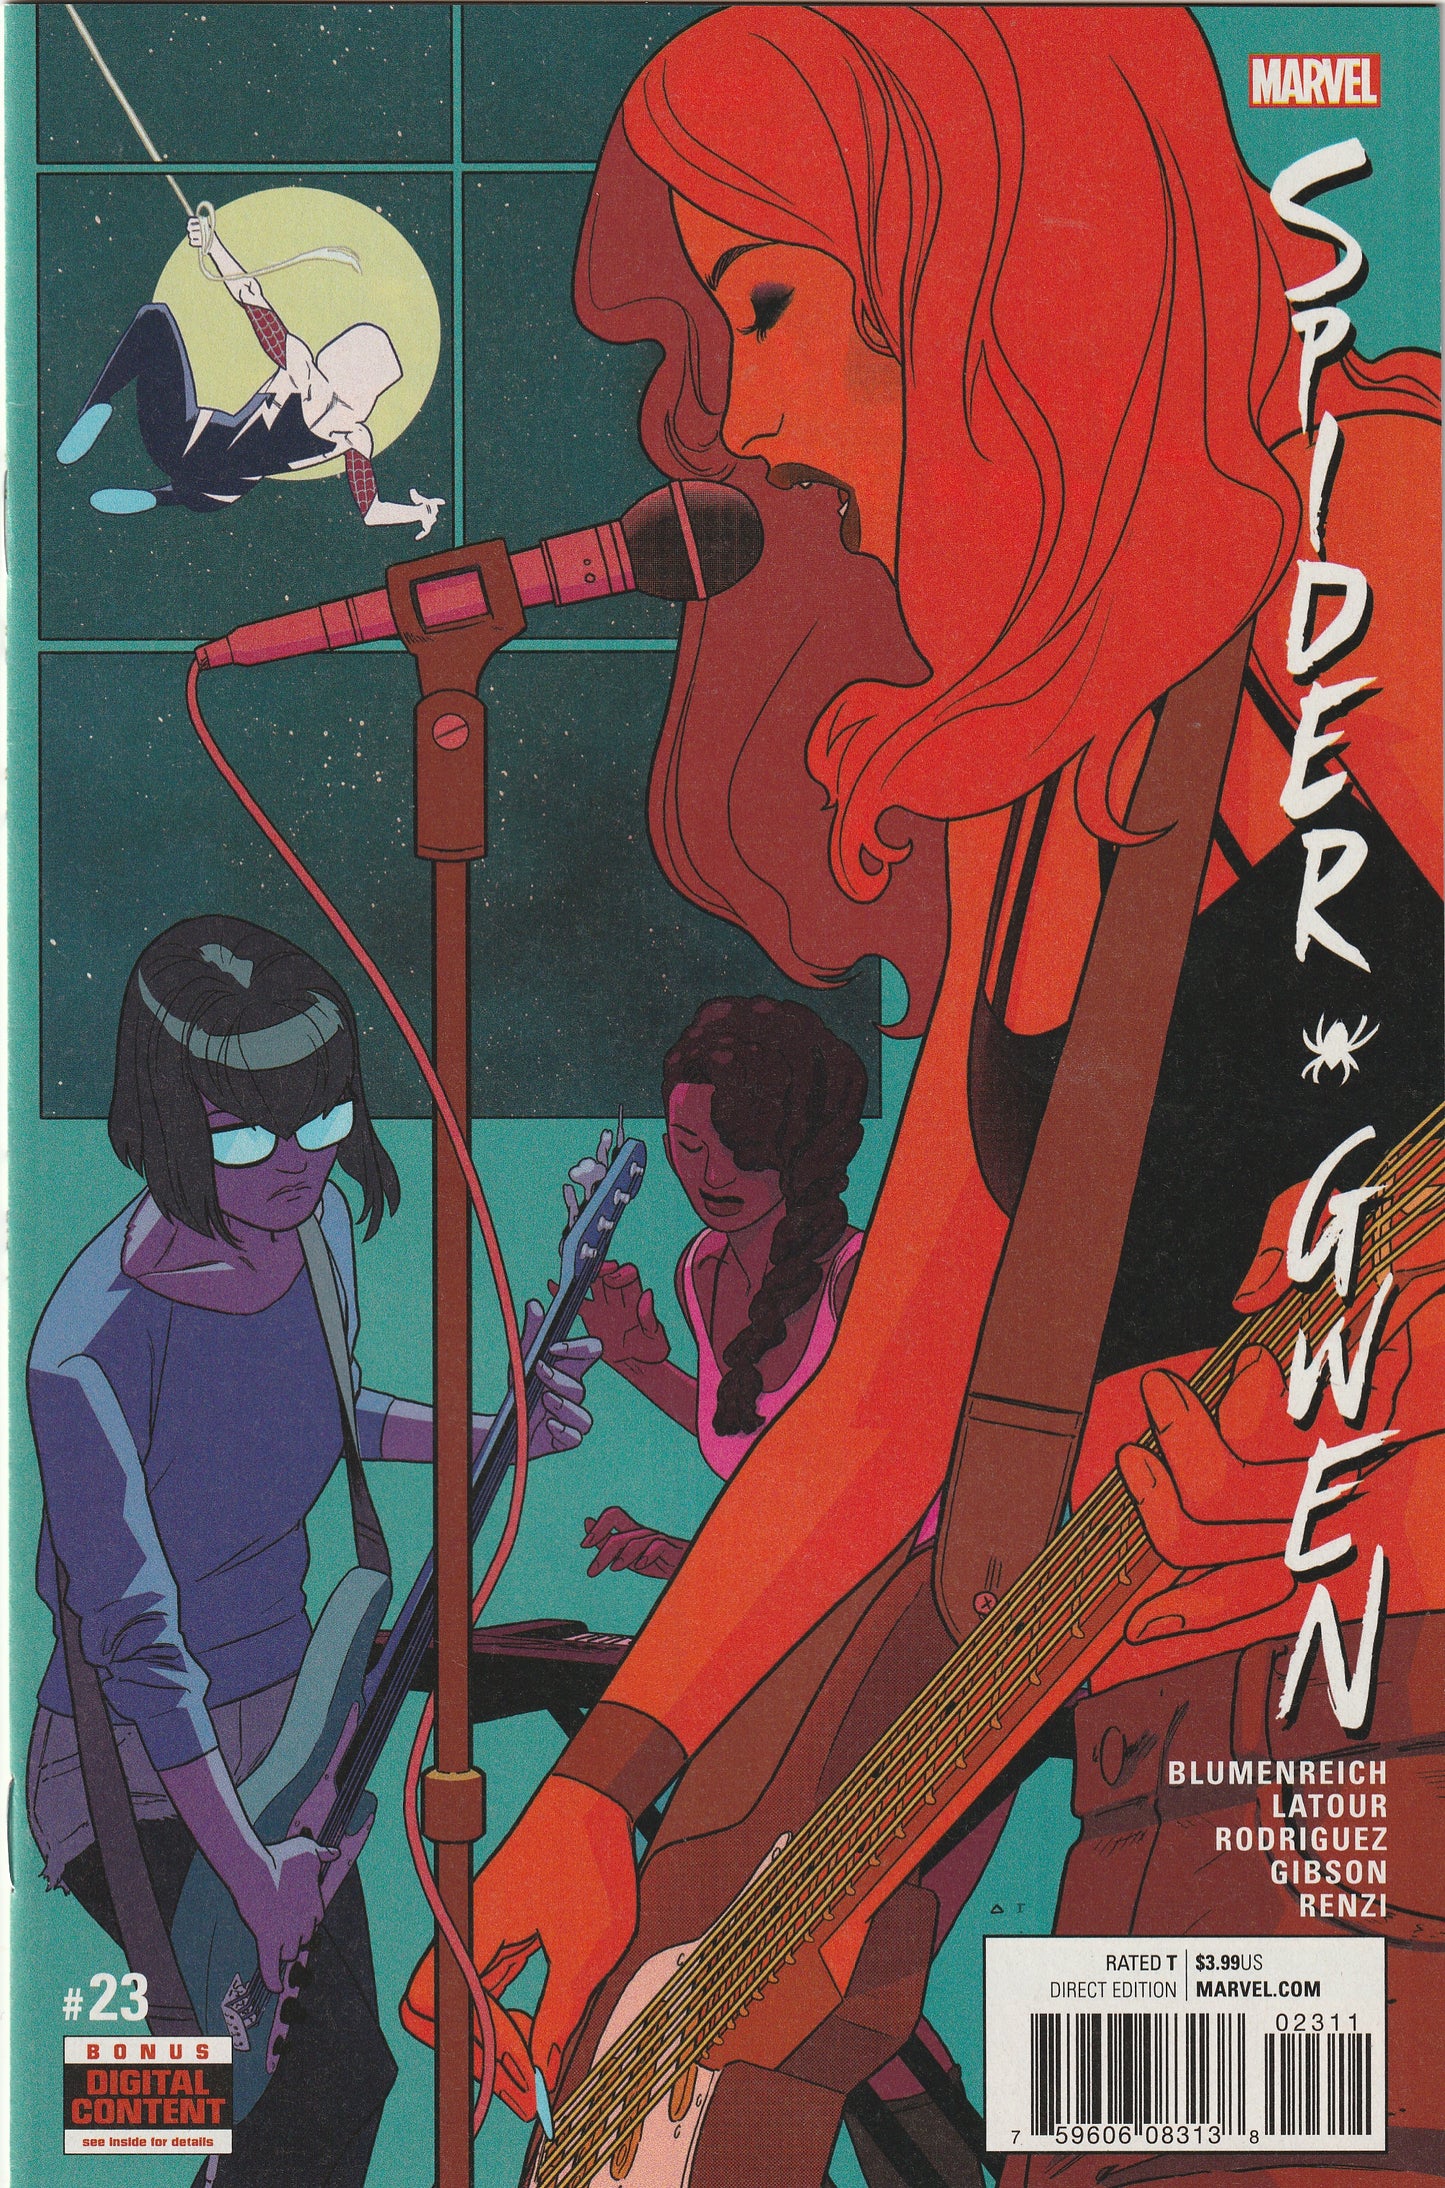 Spider-Gwen #23 (Vol 2 - 2017)